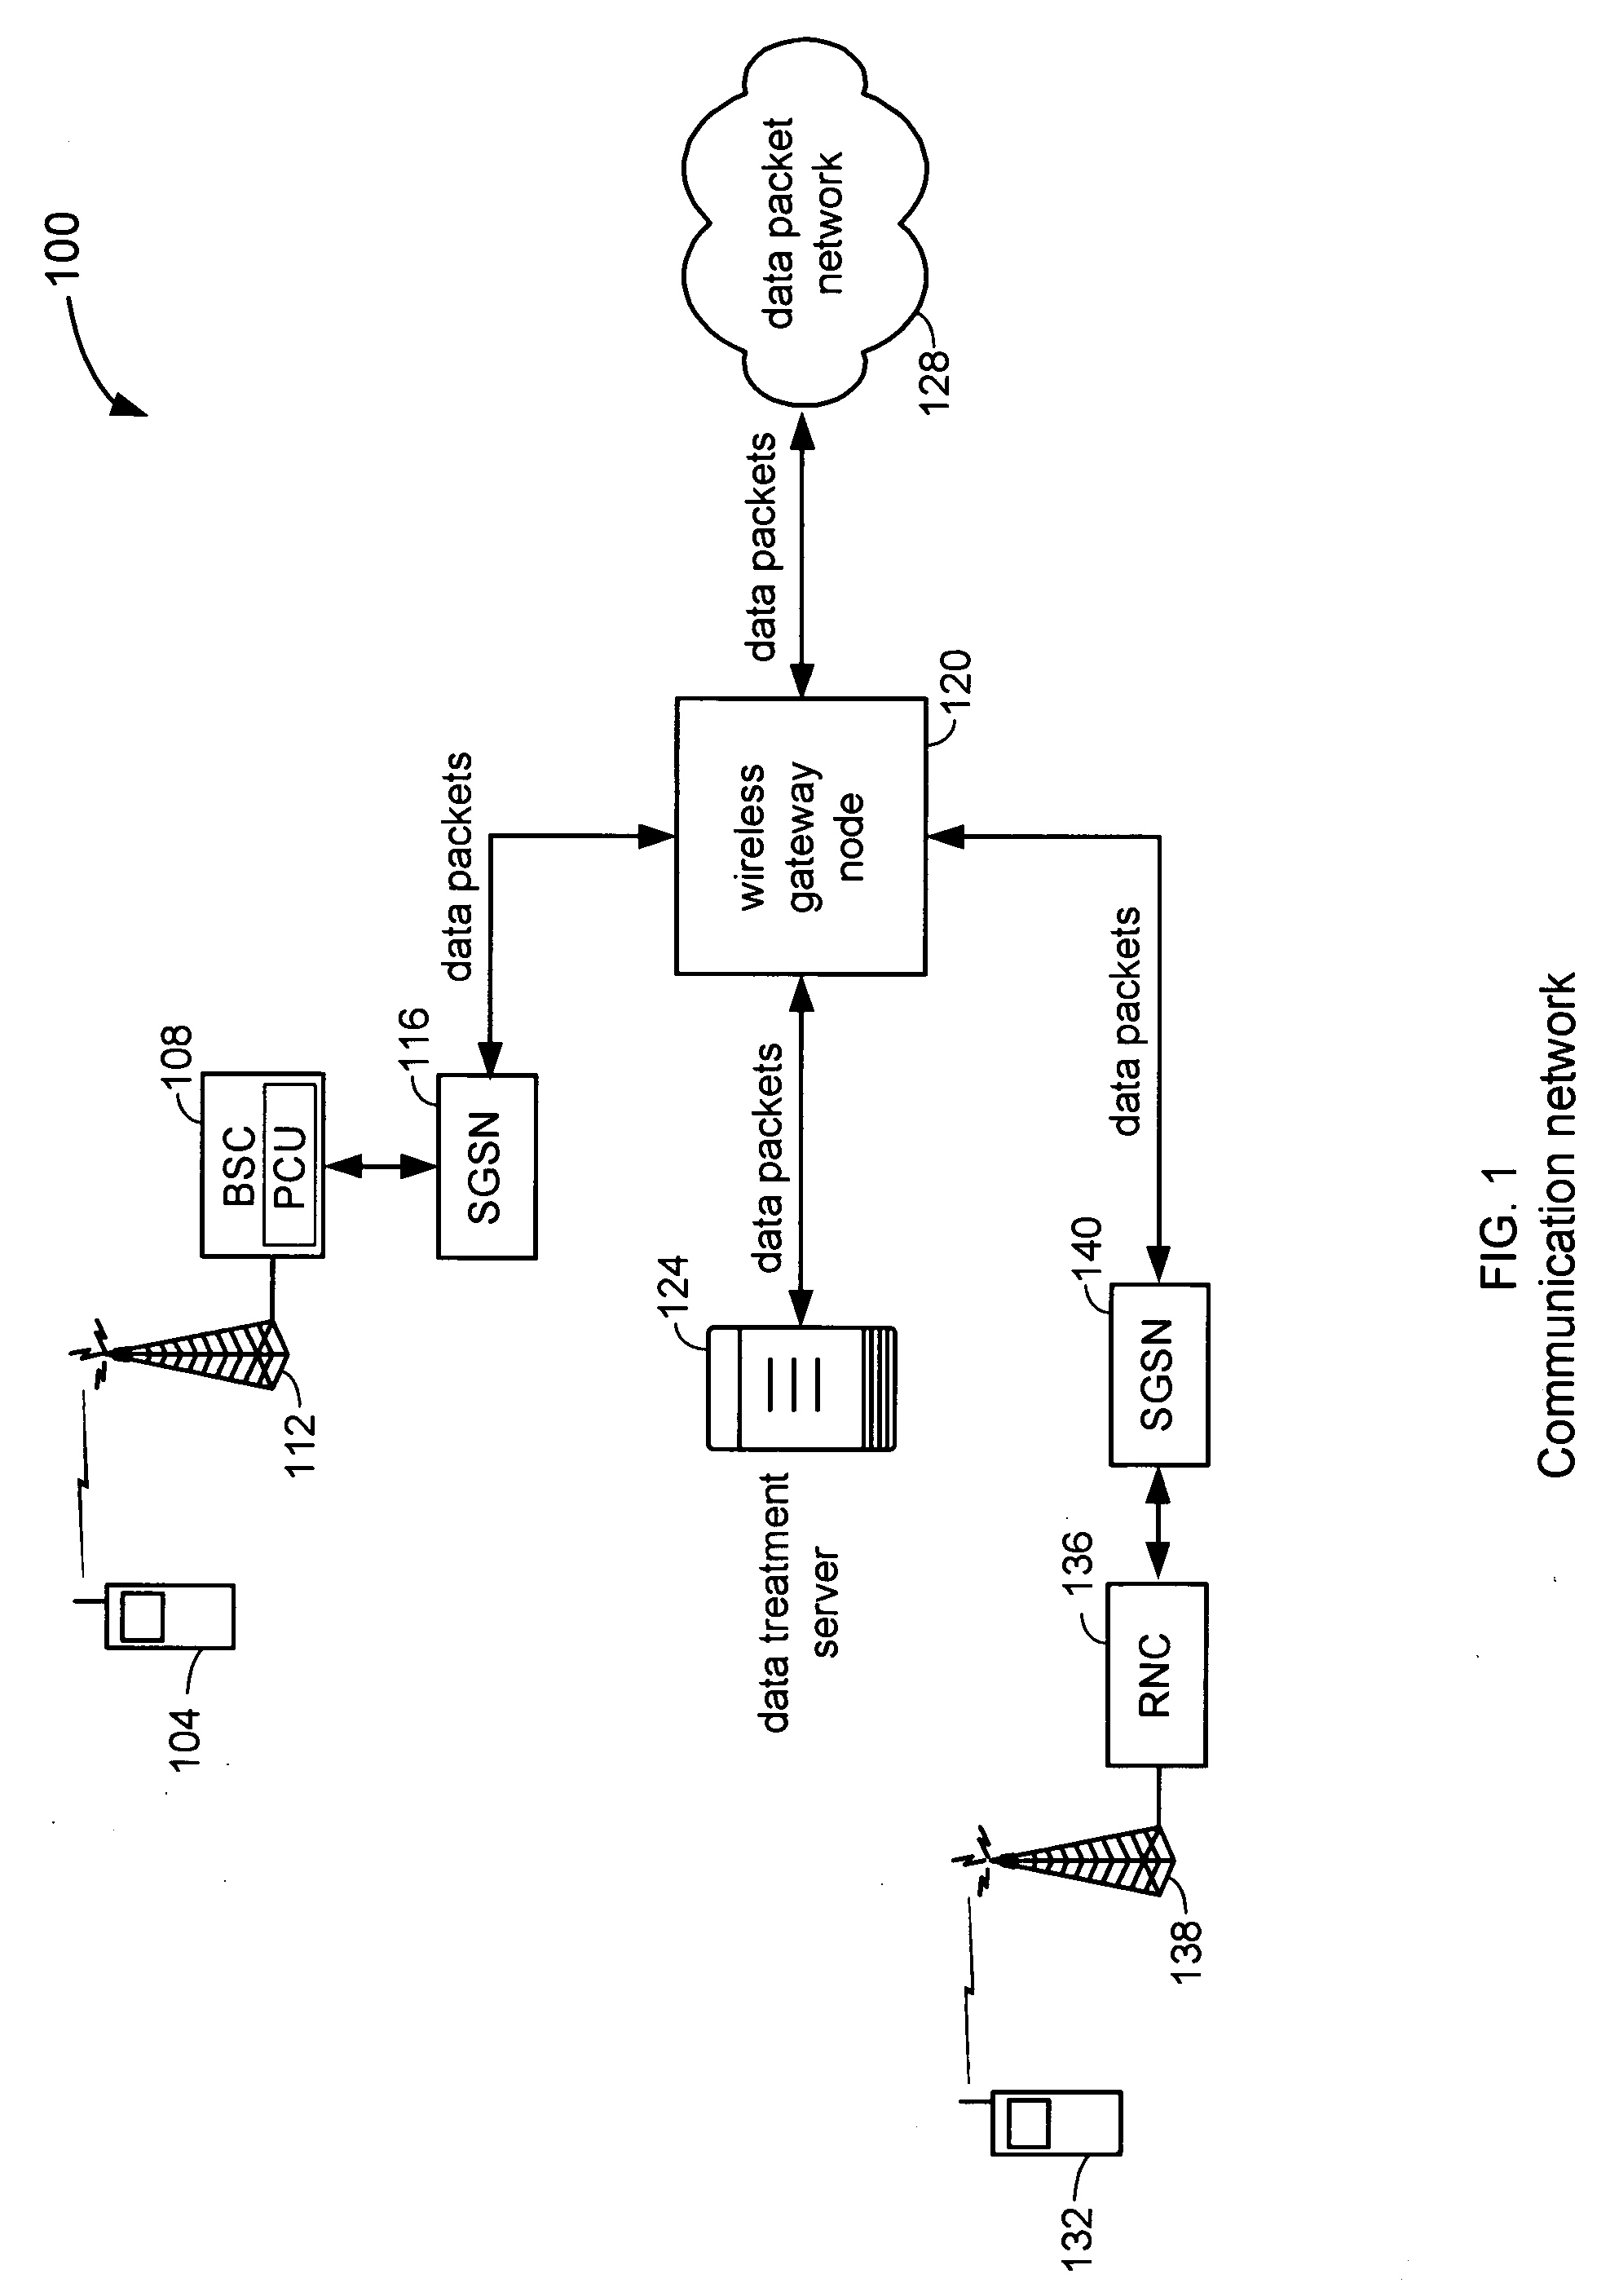 Enhanced encapsulation mechanism using GRE protocol